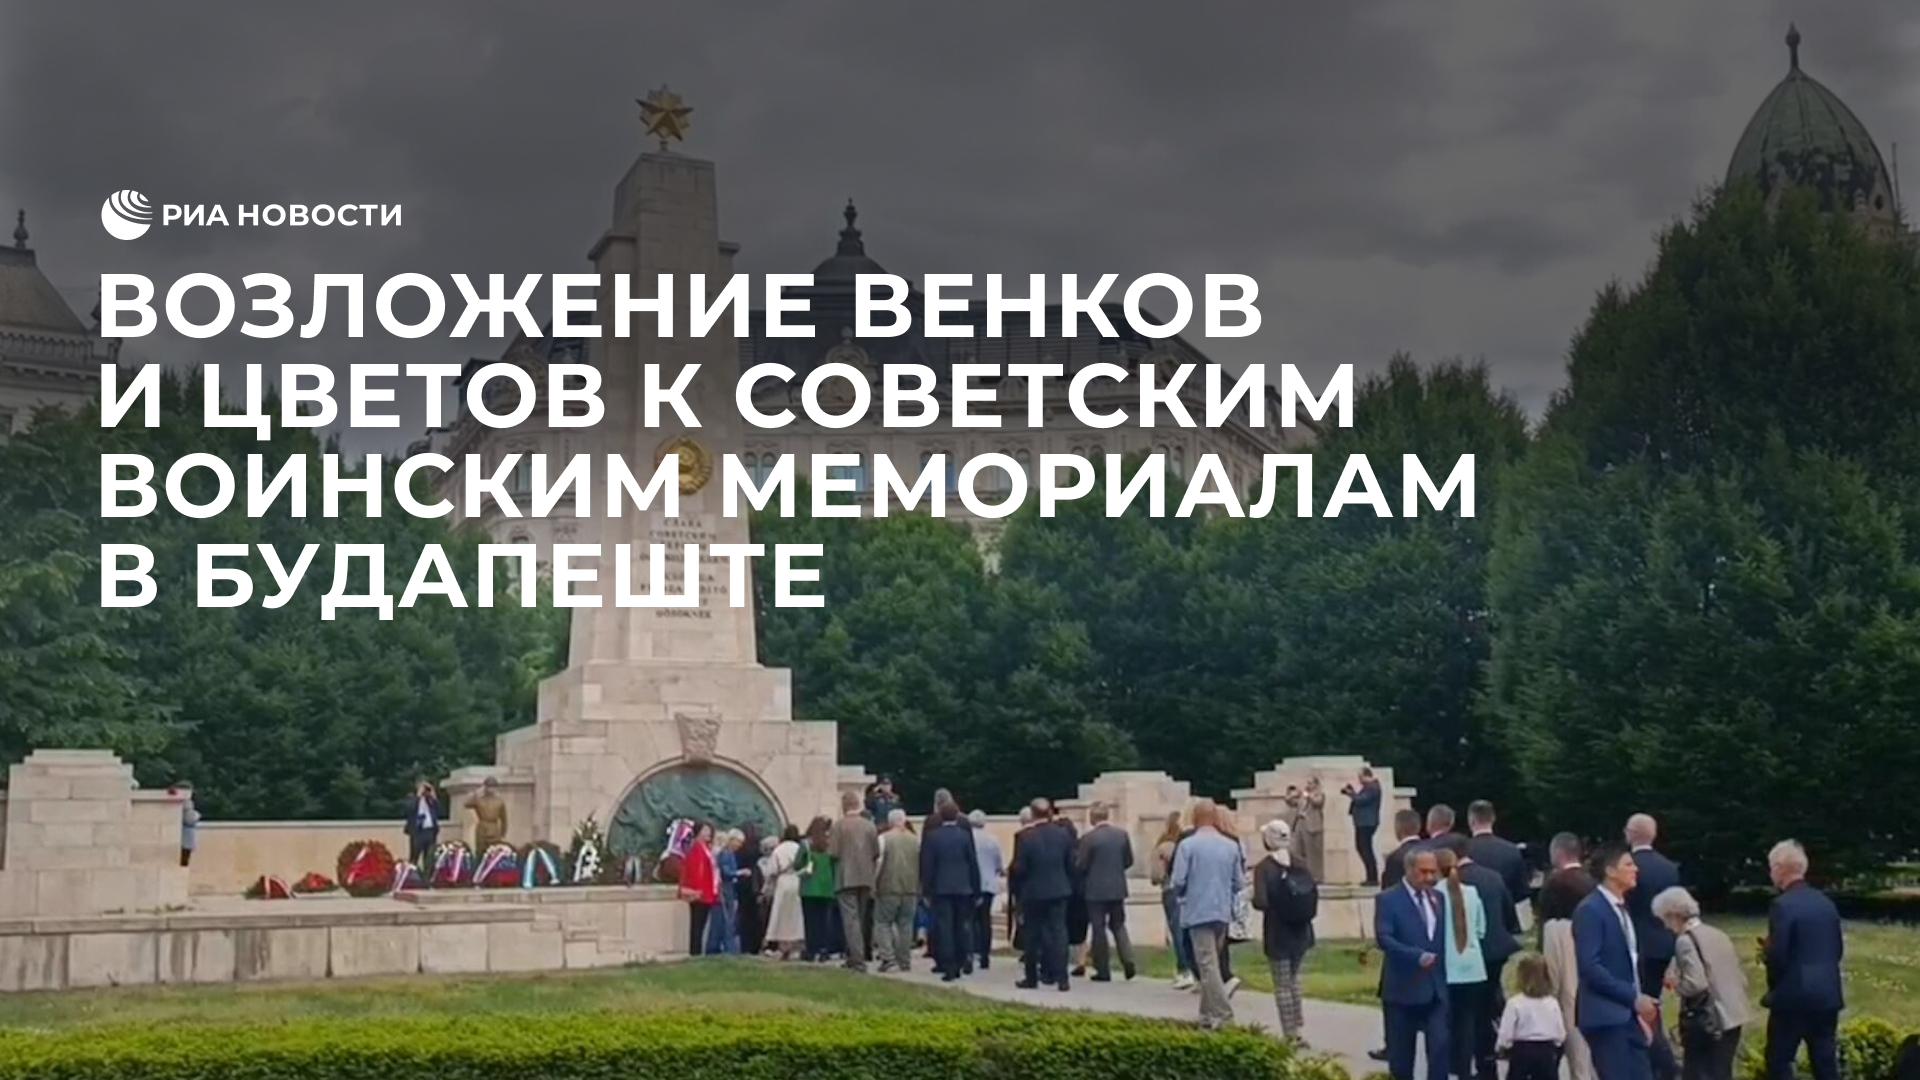 Возложение венков и цветов к советским воинским мемориалам в Будапеште